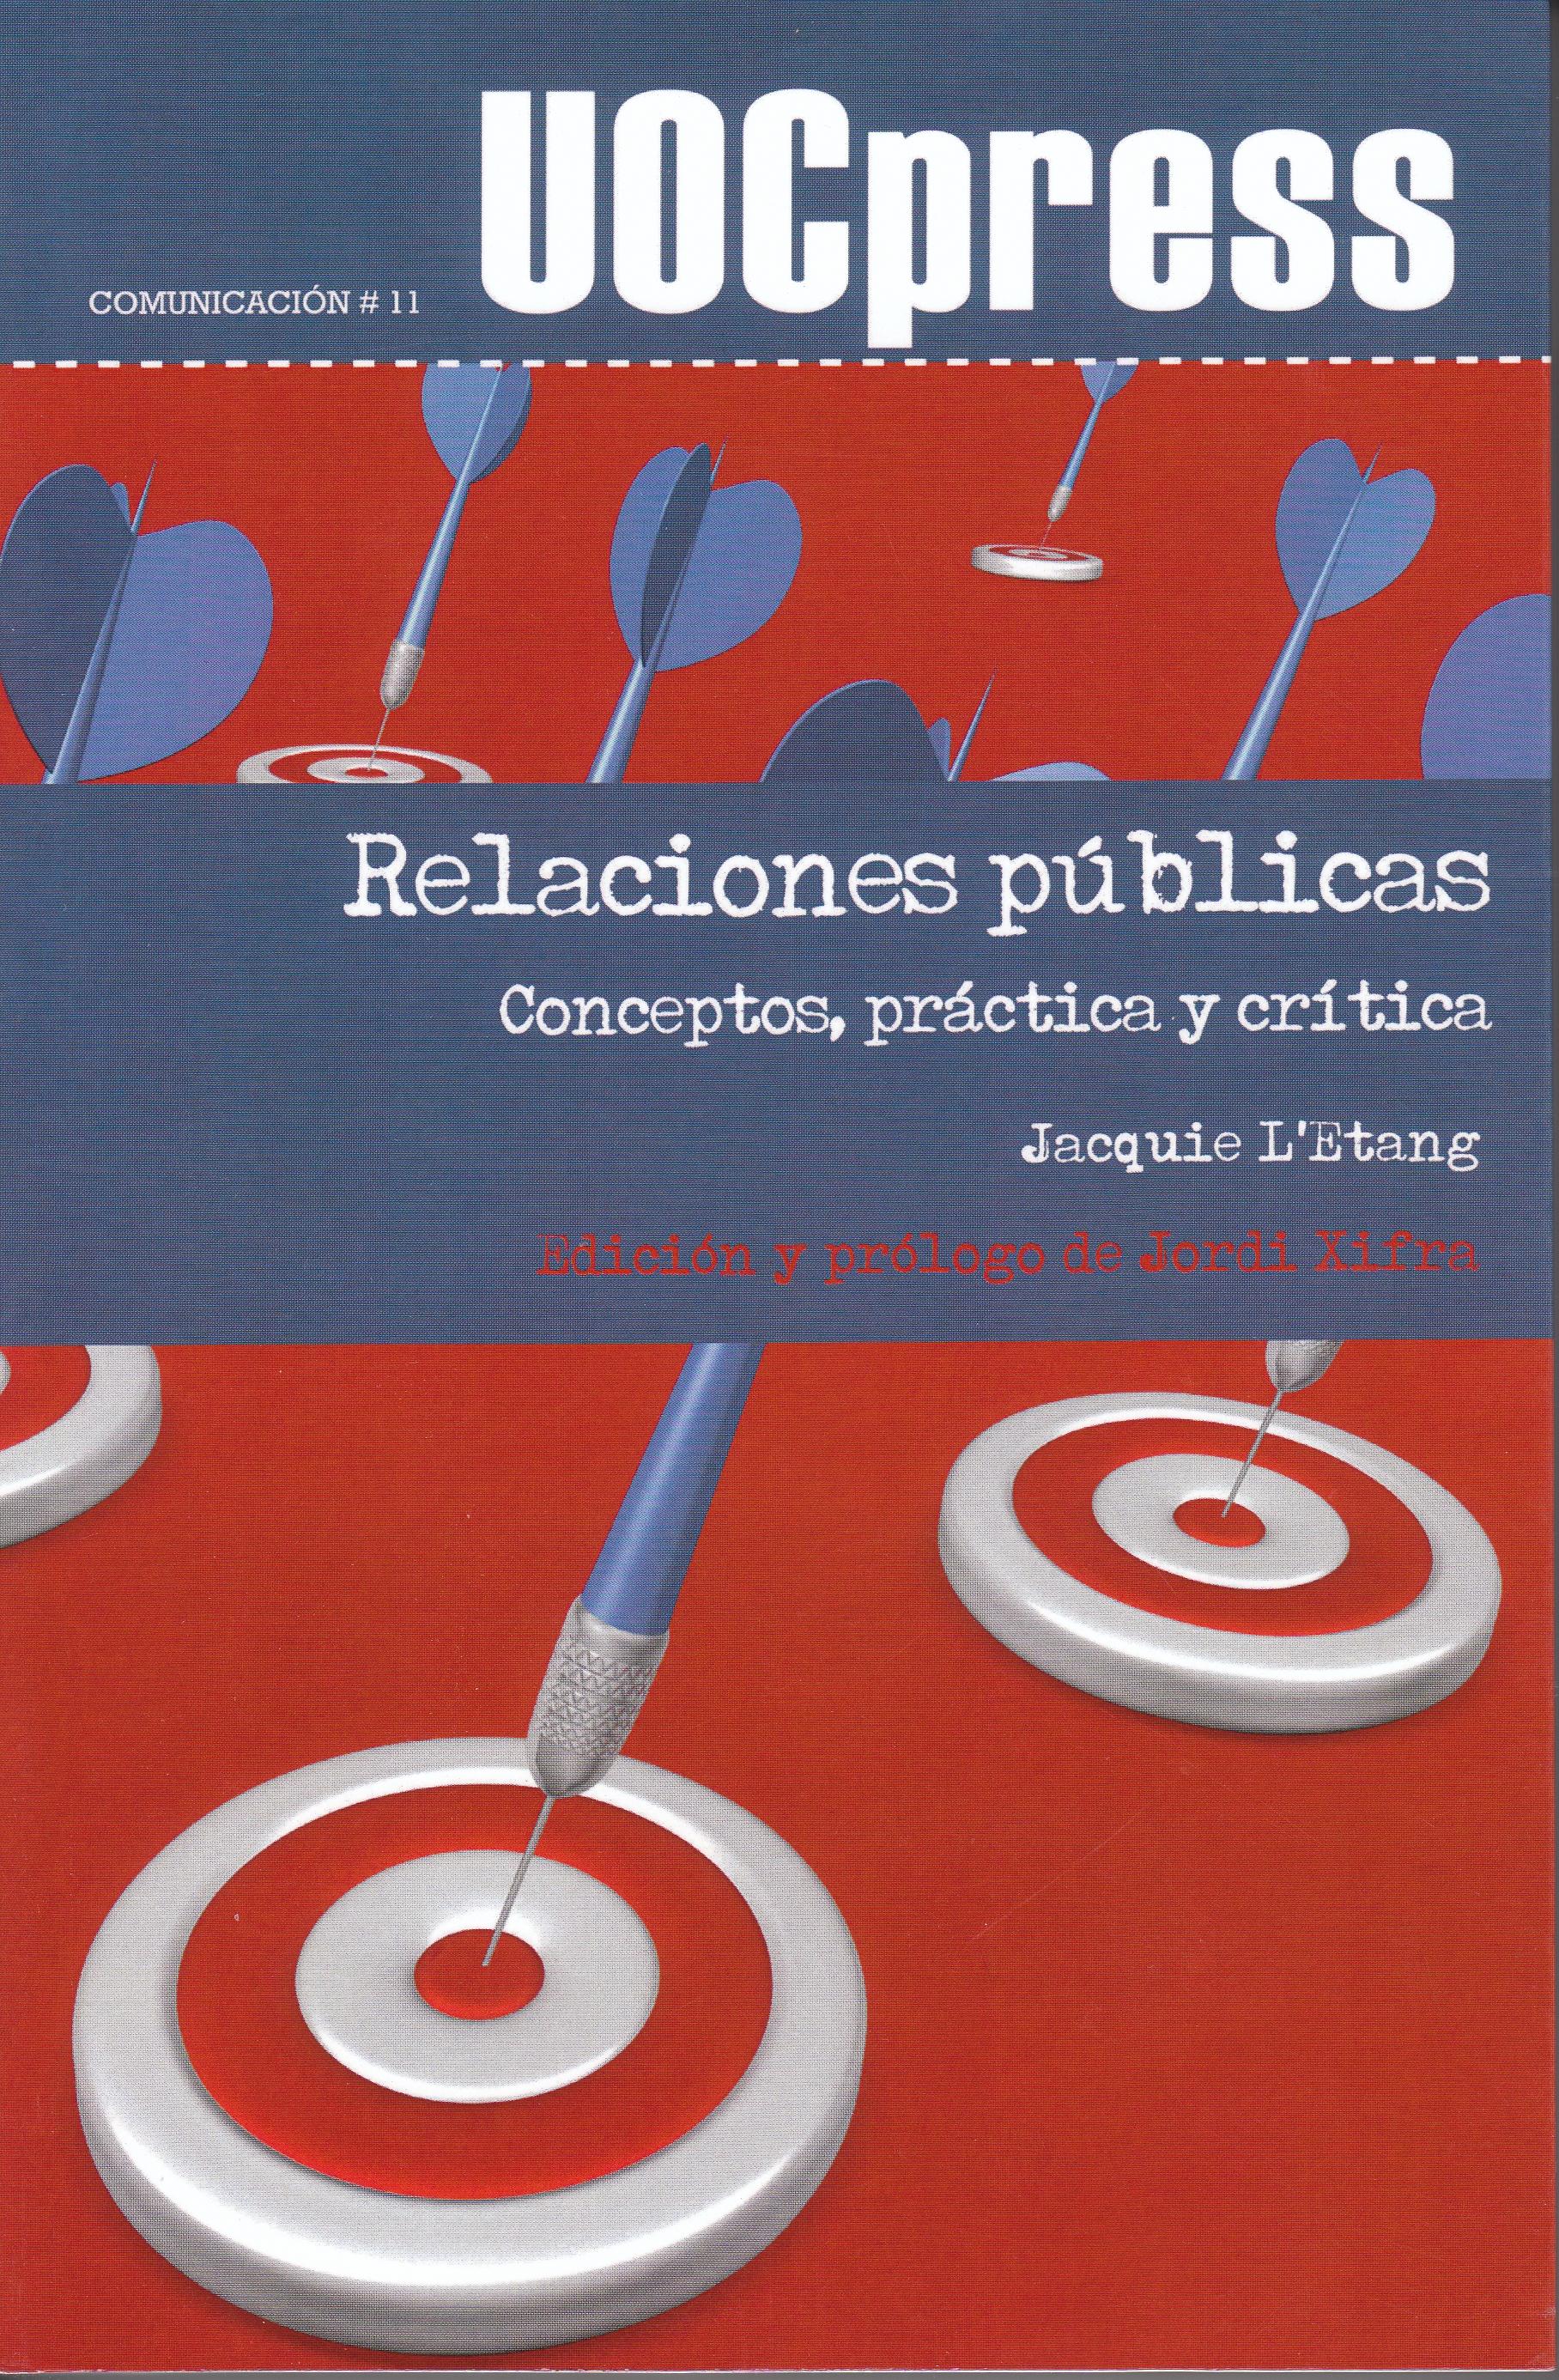 Relaciones Publicas "Conceptos, Practica y Critica"